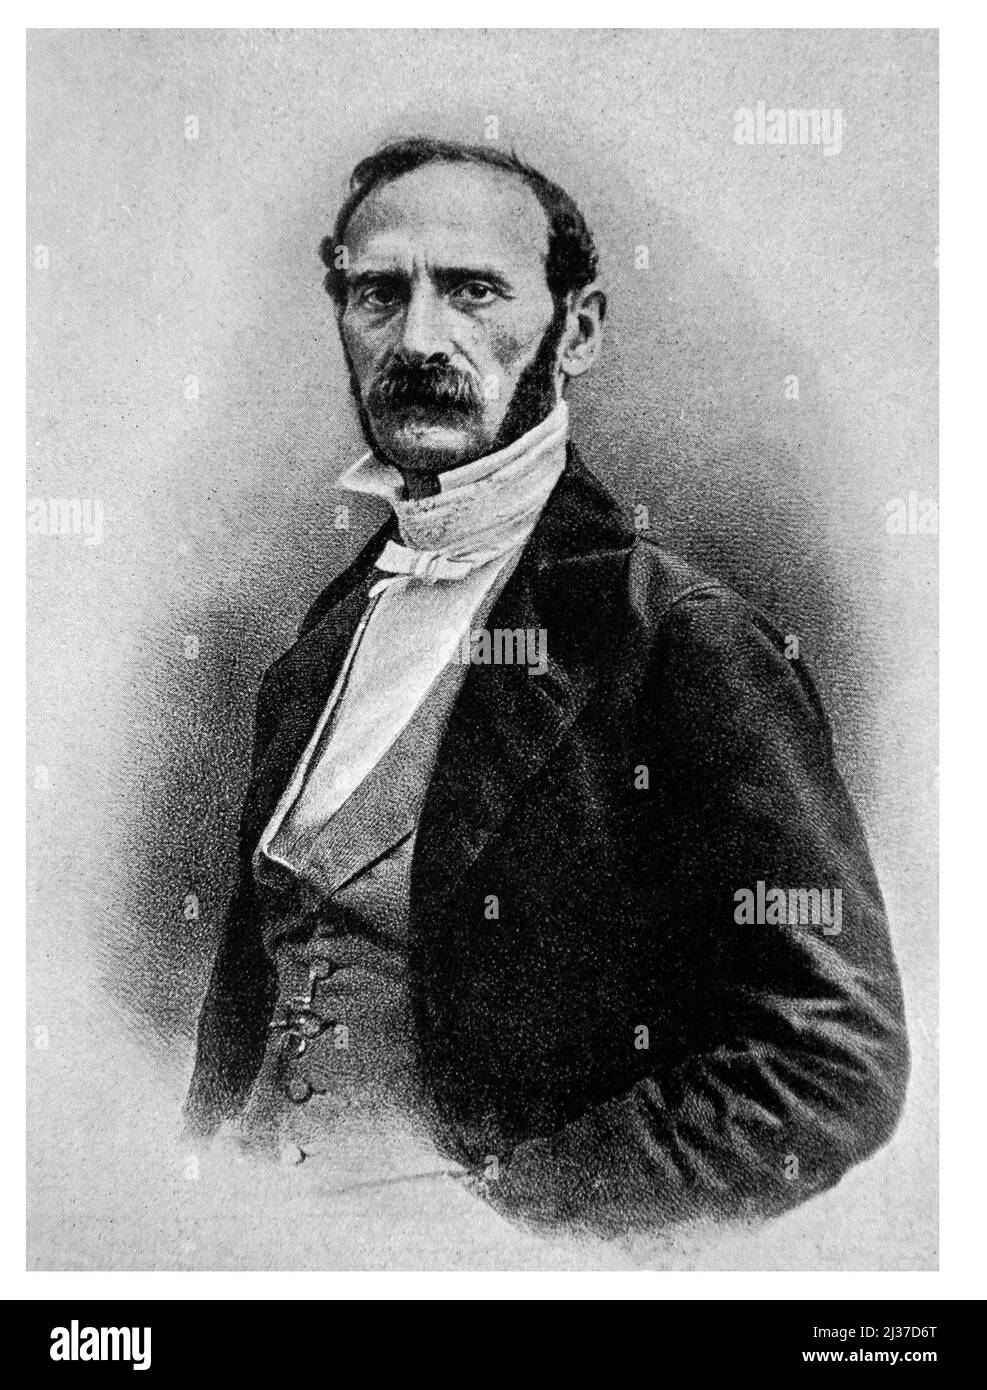 Général Cavaignac - Louis-Eugène Cavaignac (15 de octubre de 1802 en París â 28 de octubre de 1857) fue un general francés que puso en marcha una rebelión masiva Foto de stock